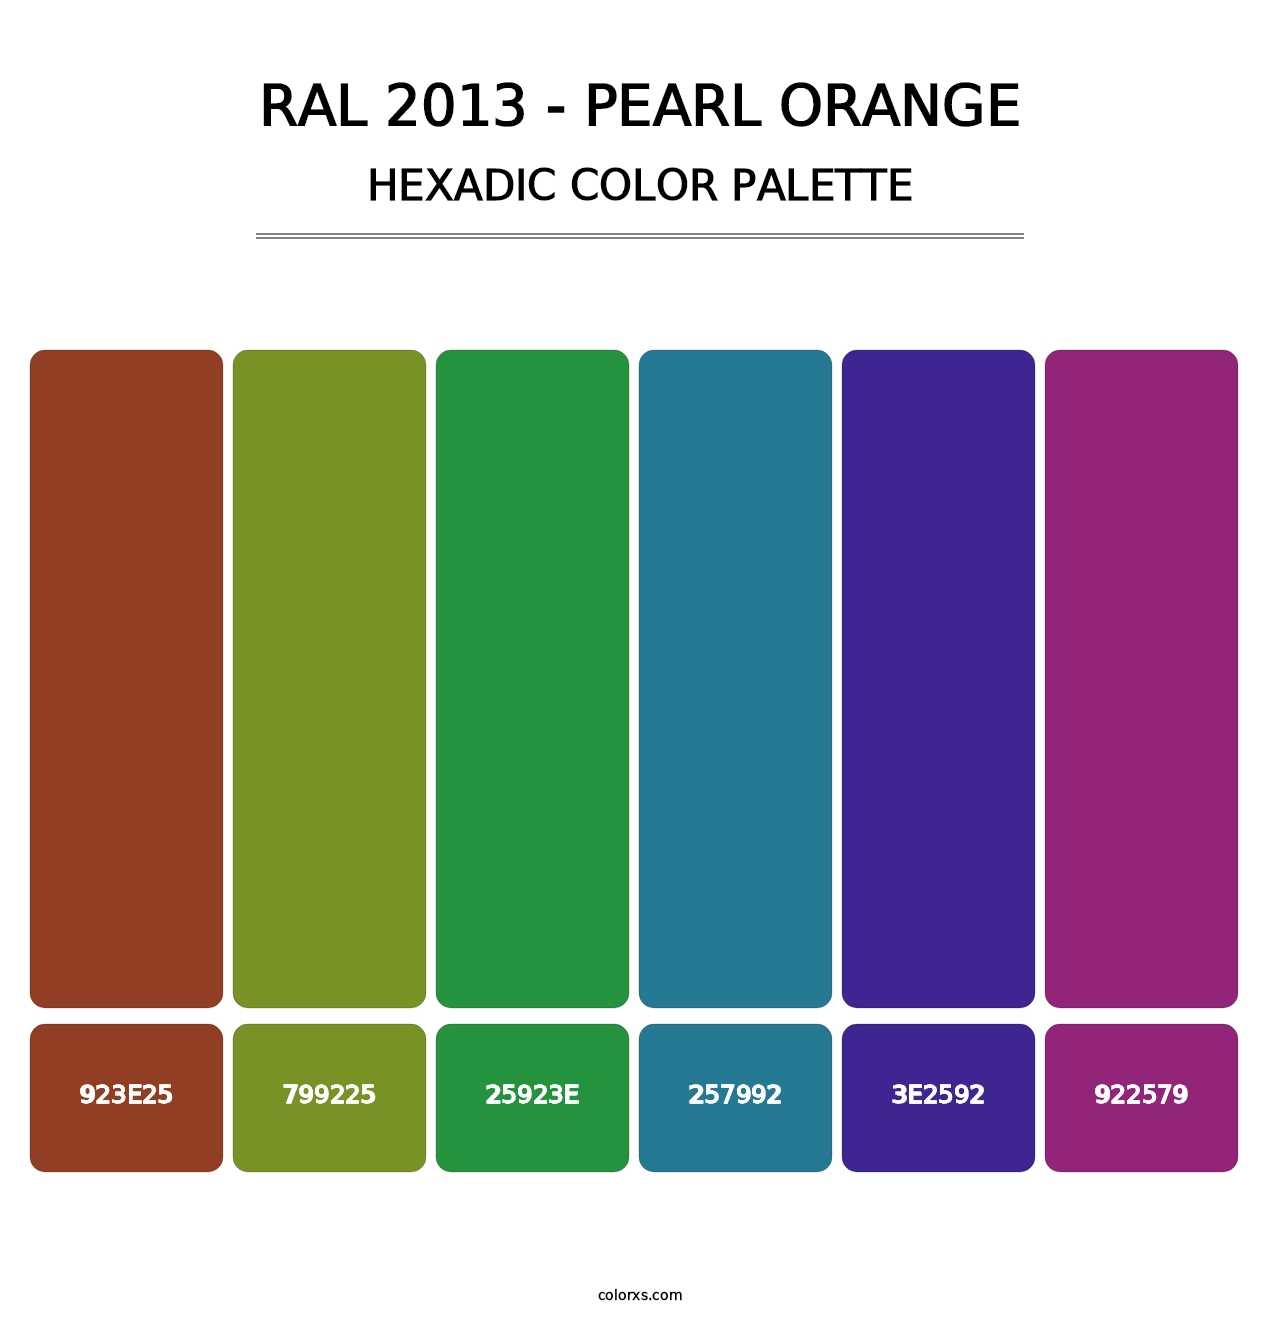 RAL 2013 - Pearl Orange - Hexadic Color Palette